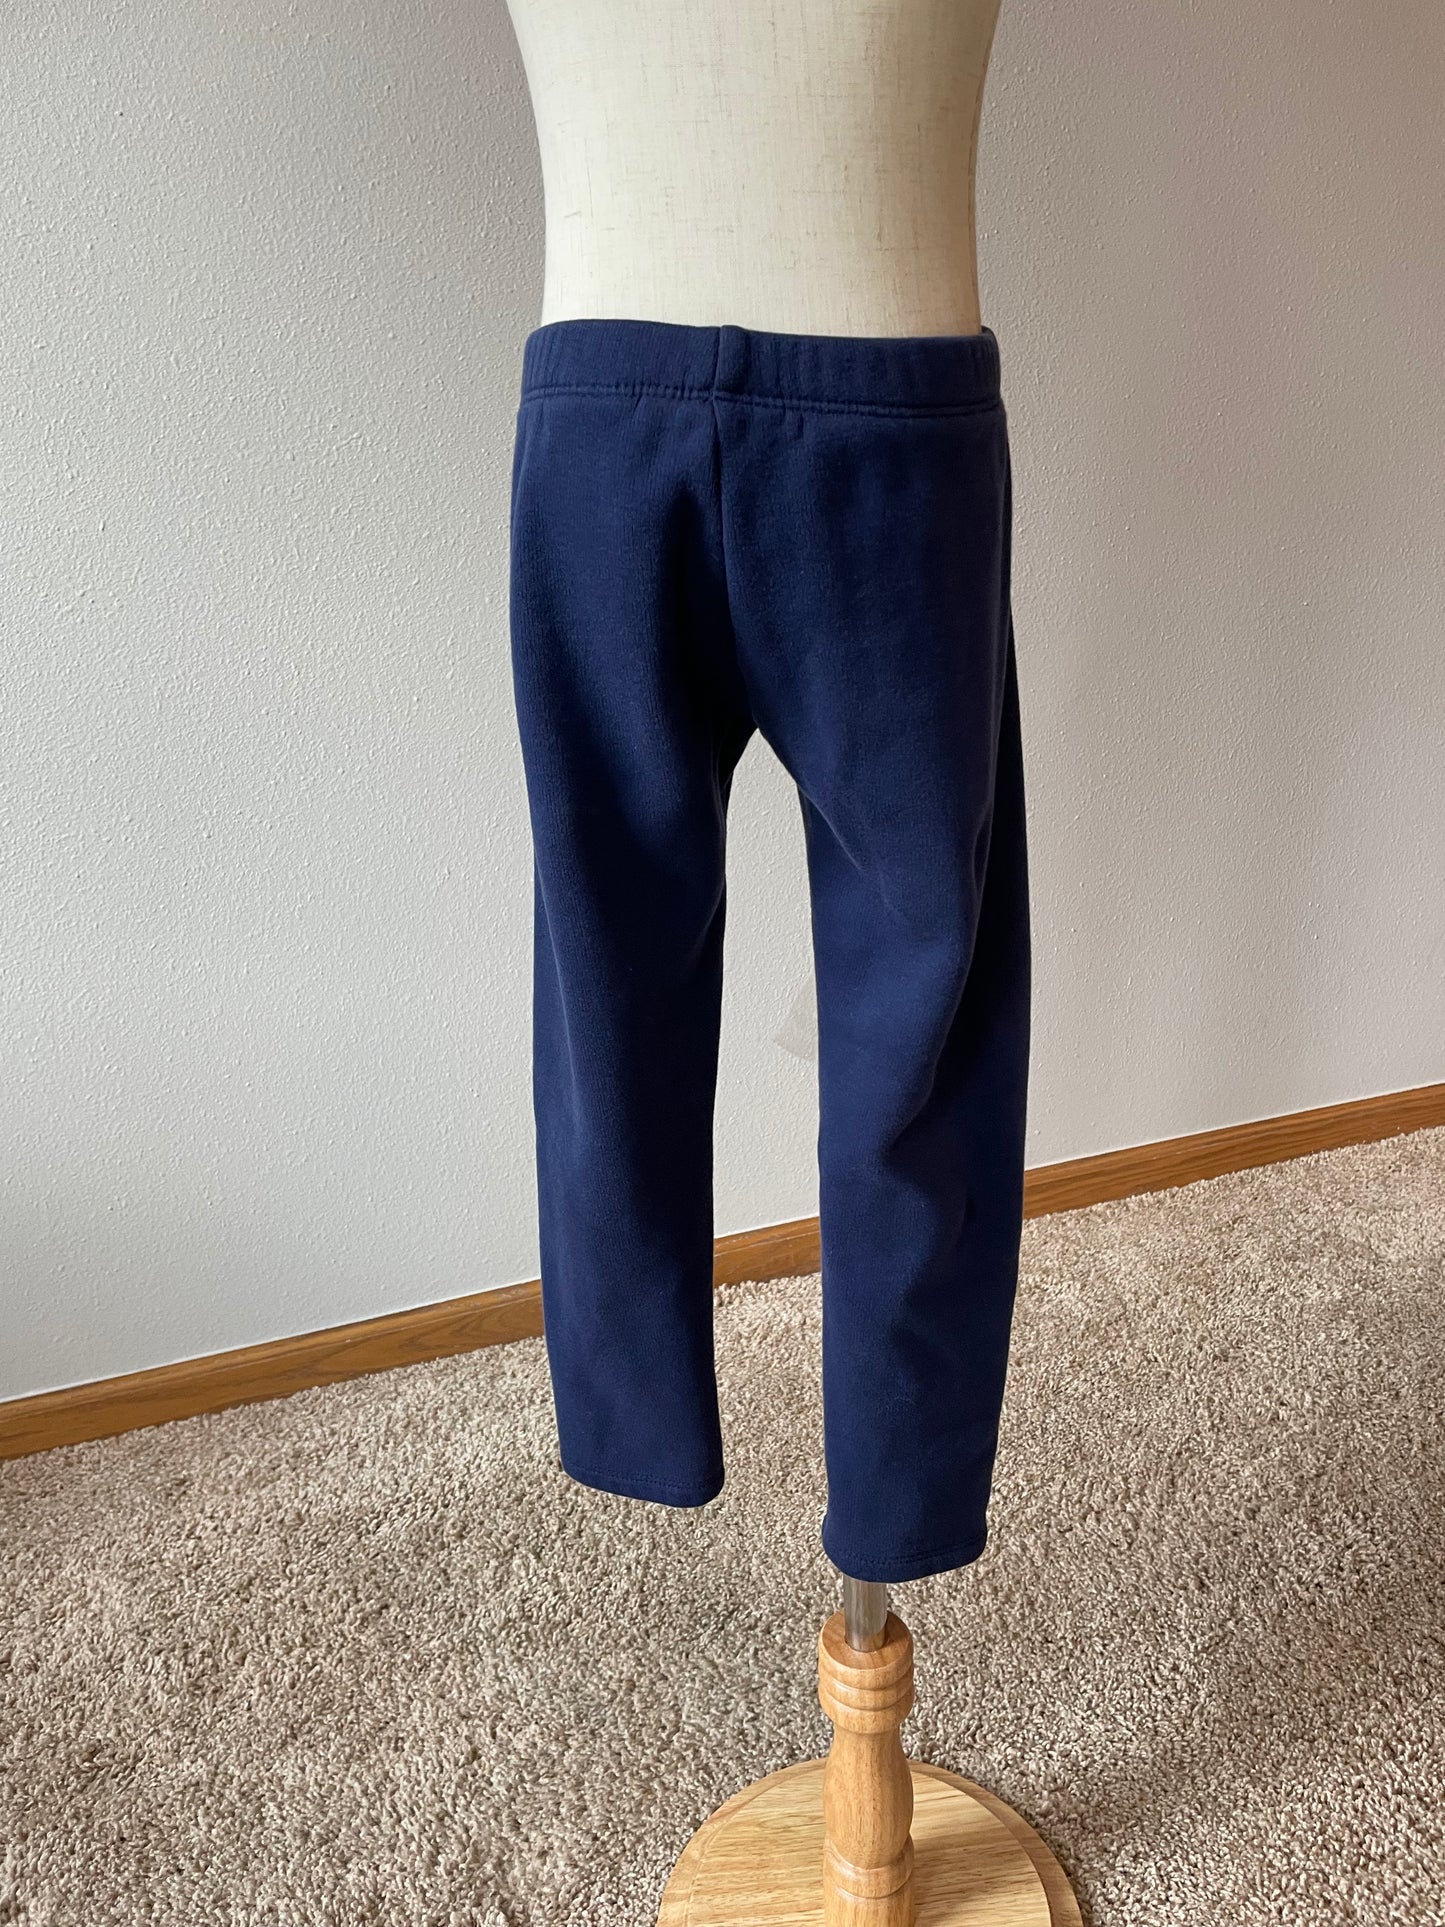 Eddie Bauer Navy Sweatpants (XS 5/6)